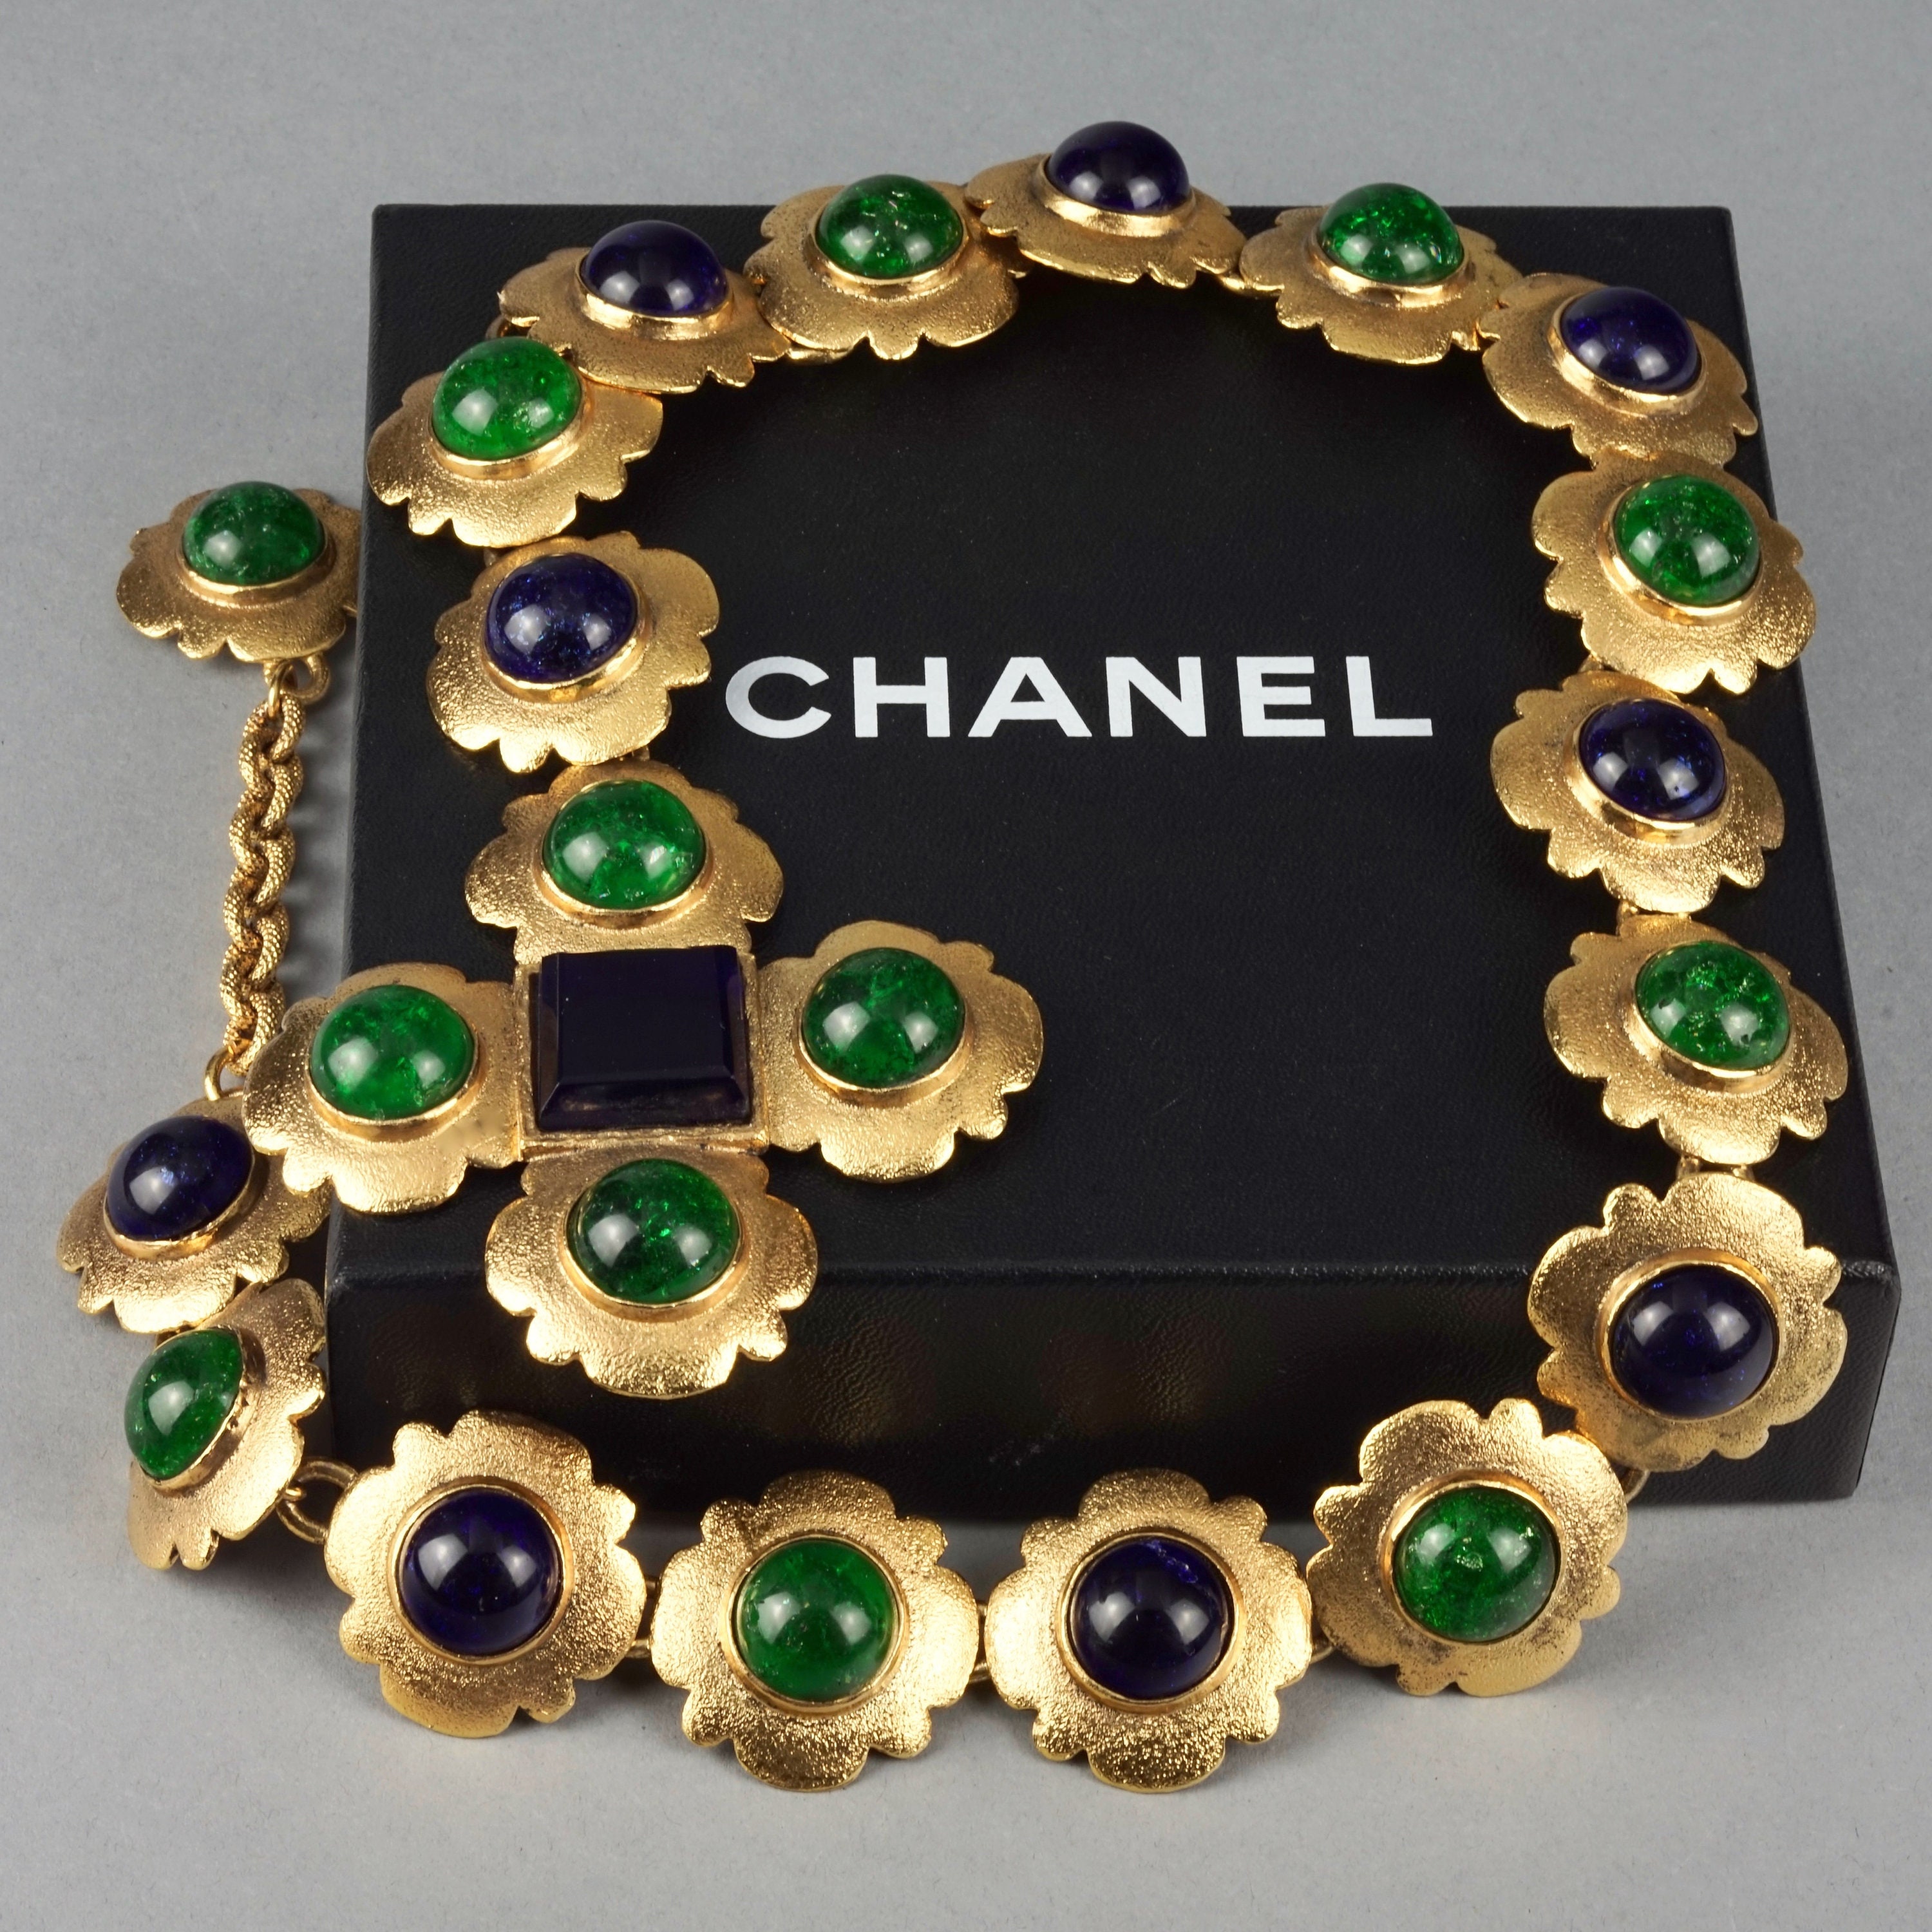 Chanel Gripoix Crystals Brooch